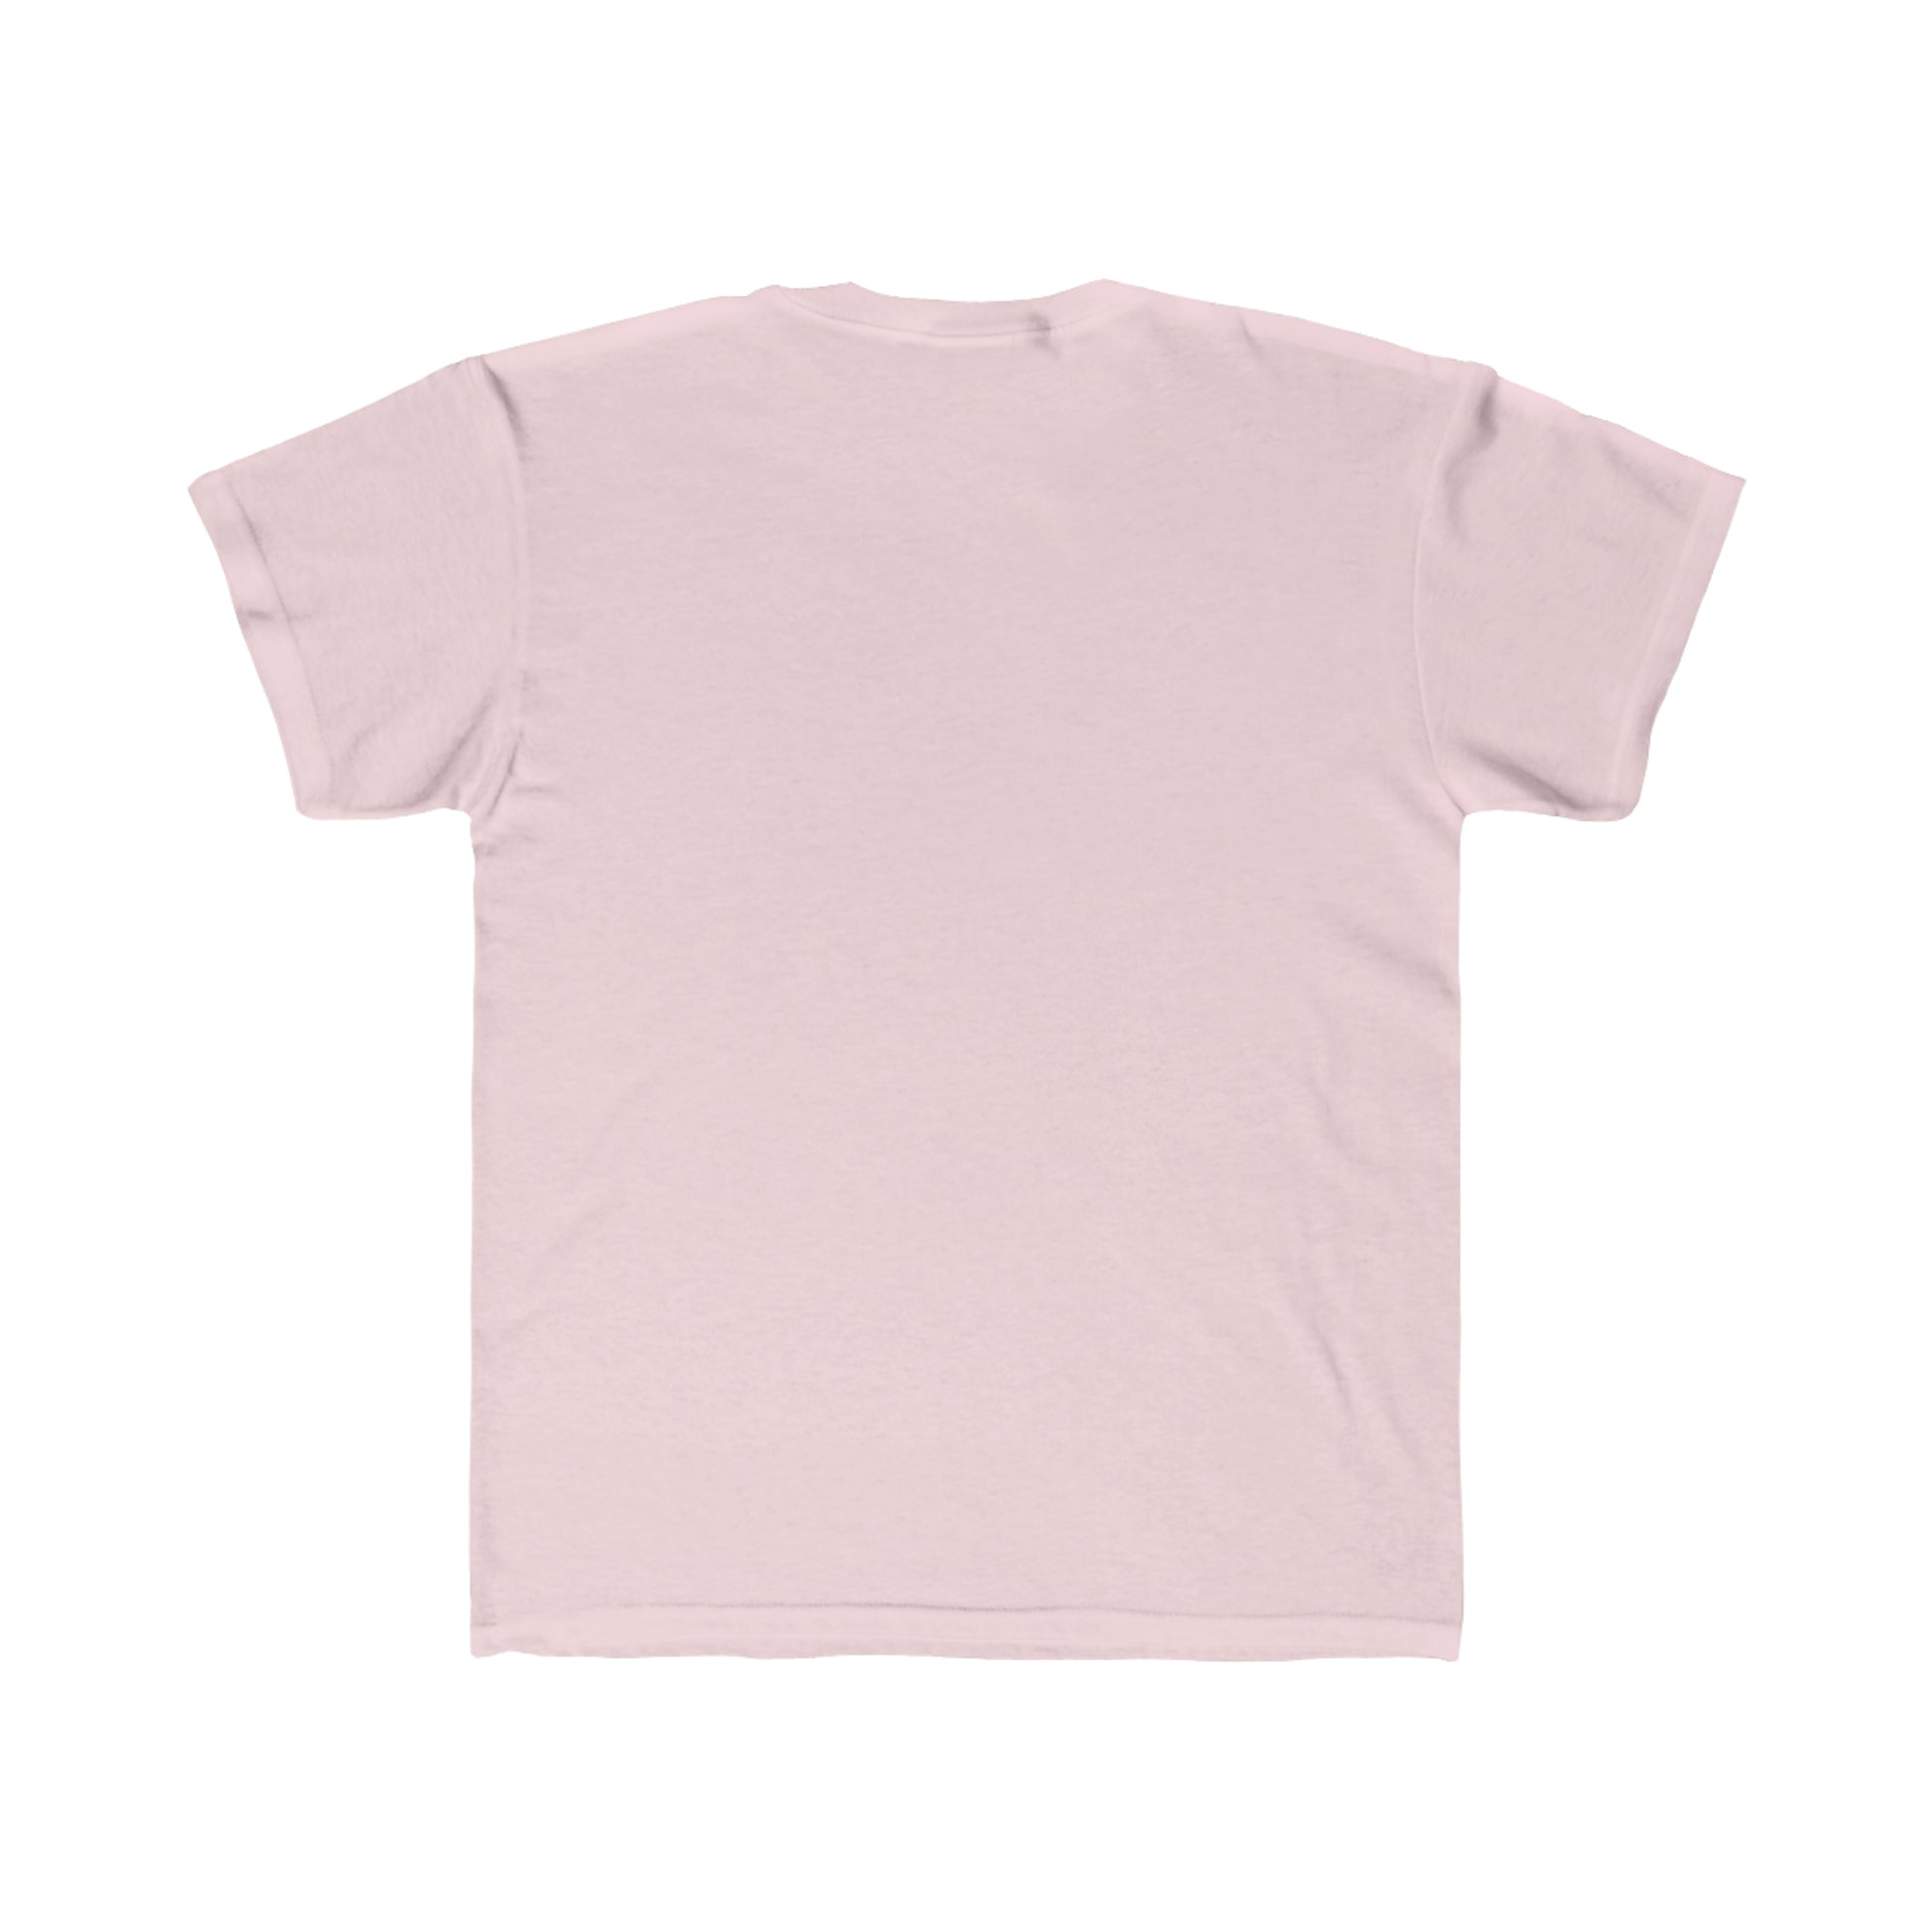 Light Pink T-shirt - Rebo's beach factory